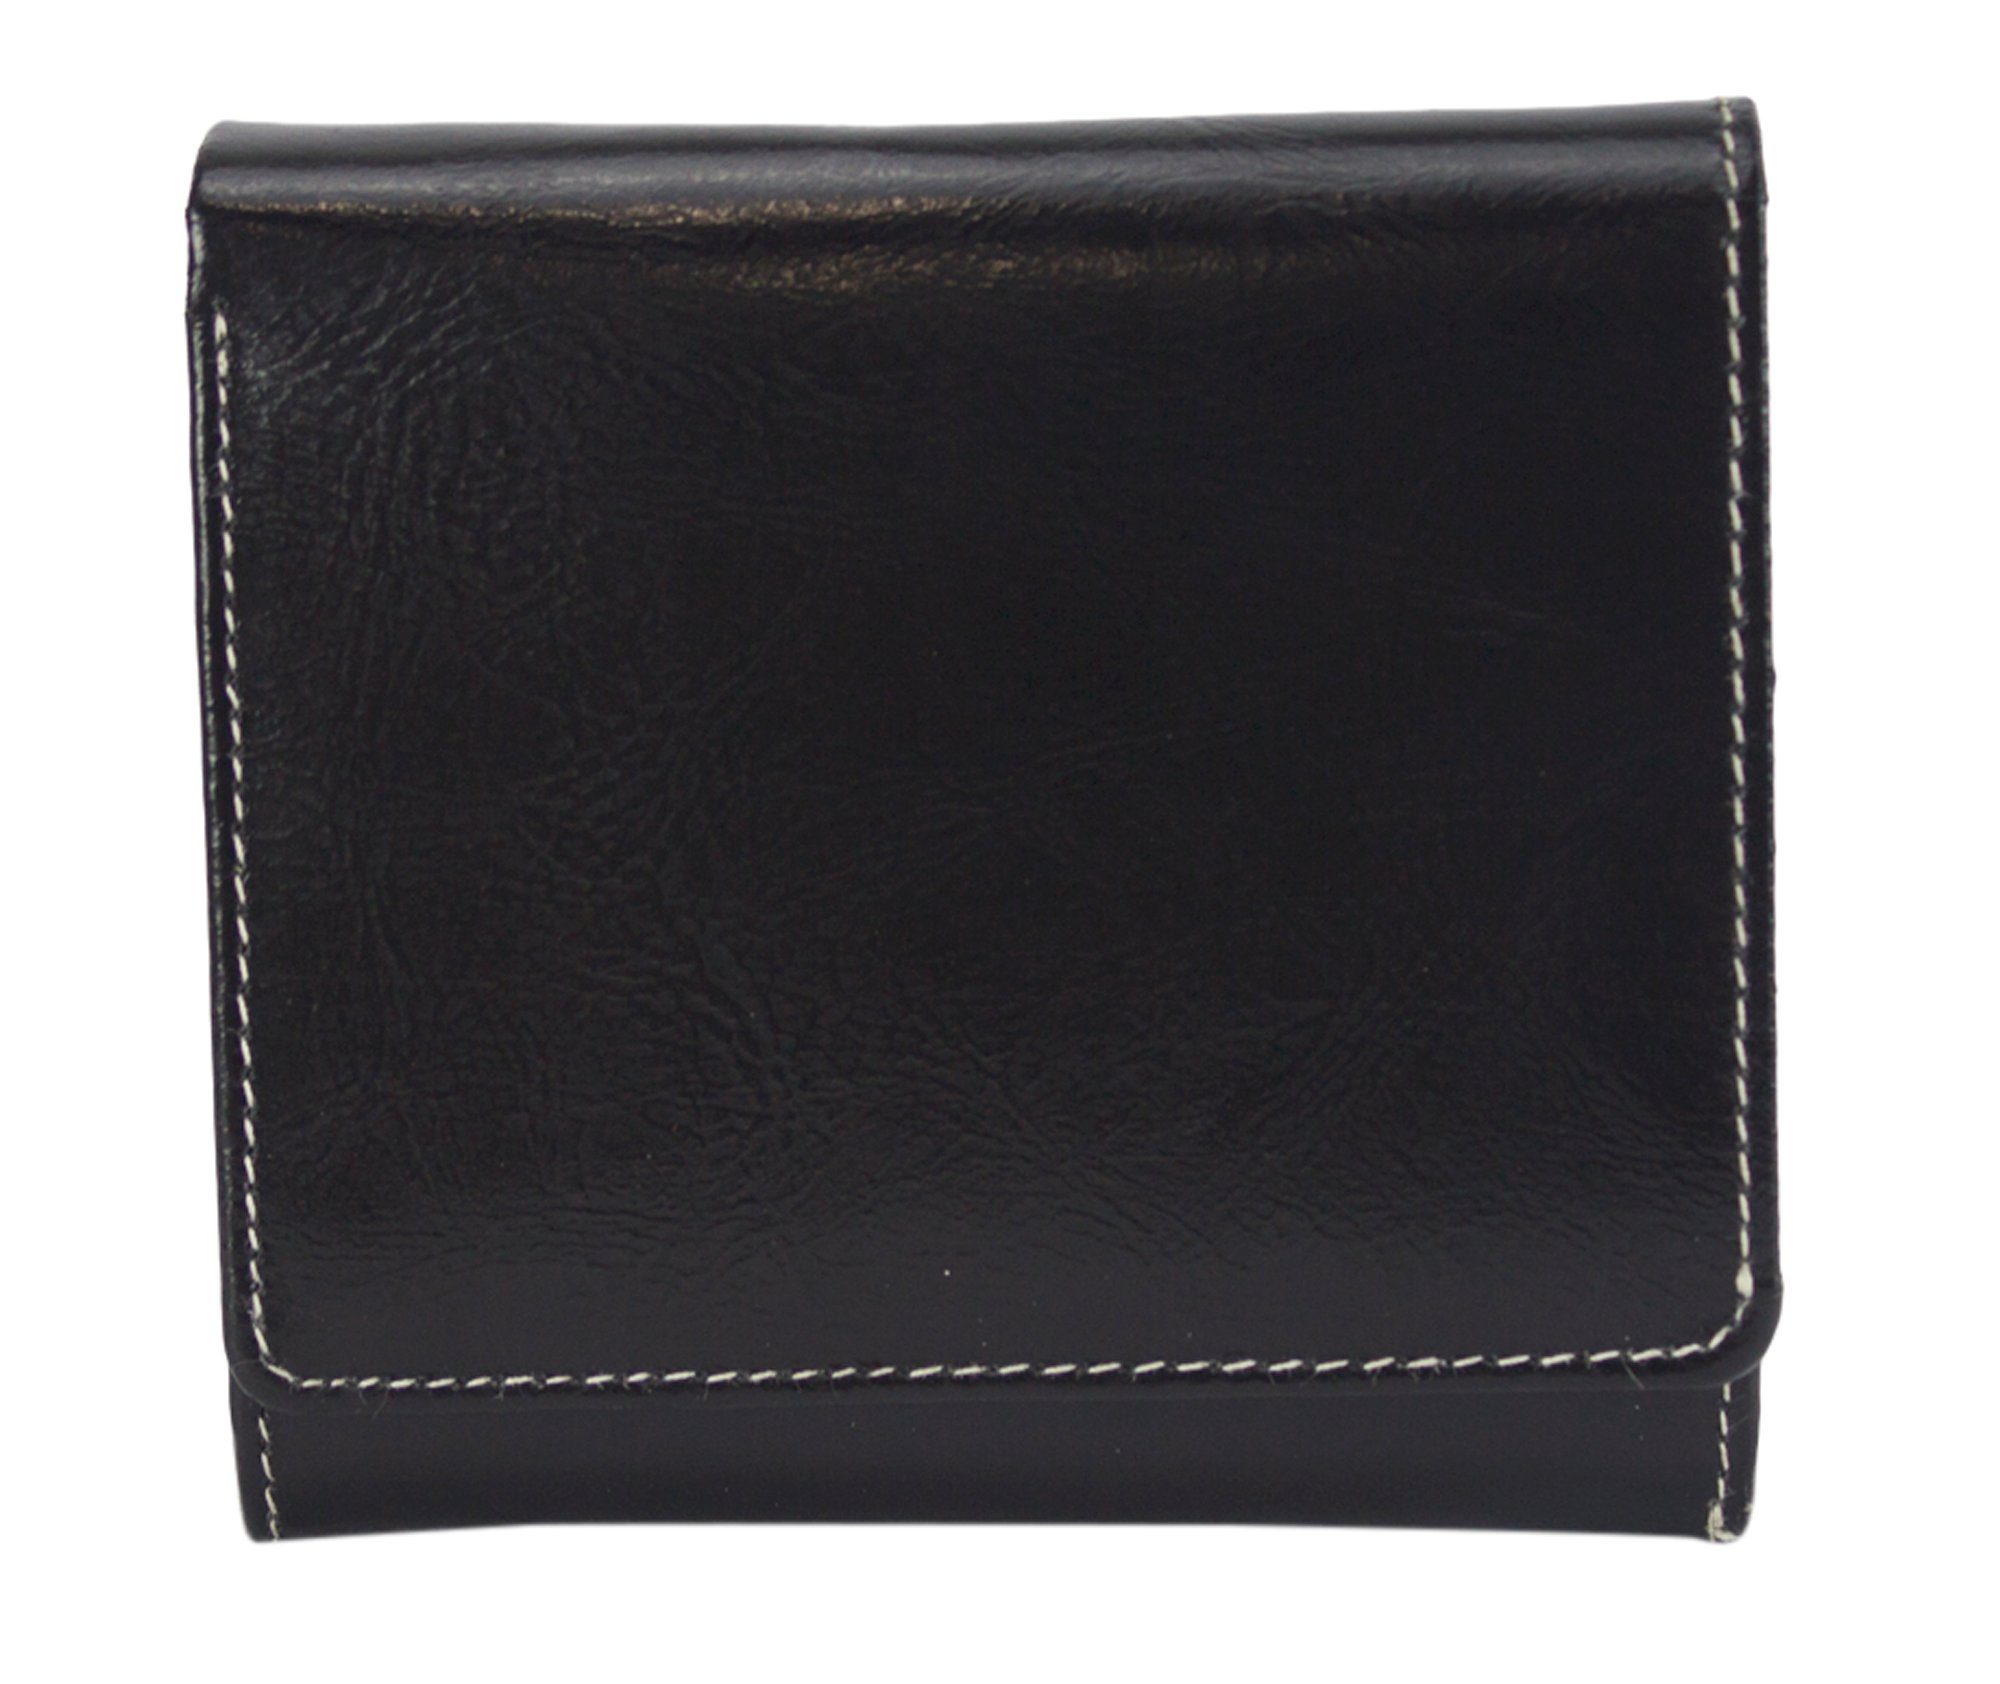 Sunsa Geldbörse echt Leder Geldbeutel Portemonnaie Brieftasche klein Damen, echt Leder, aus recycelten Lederresten, mit RFID-Schutz, Unisex schwarz | Geldbörsen